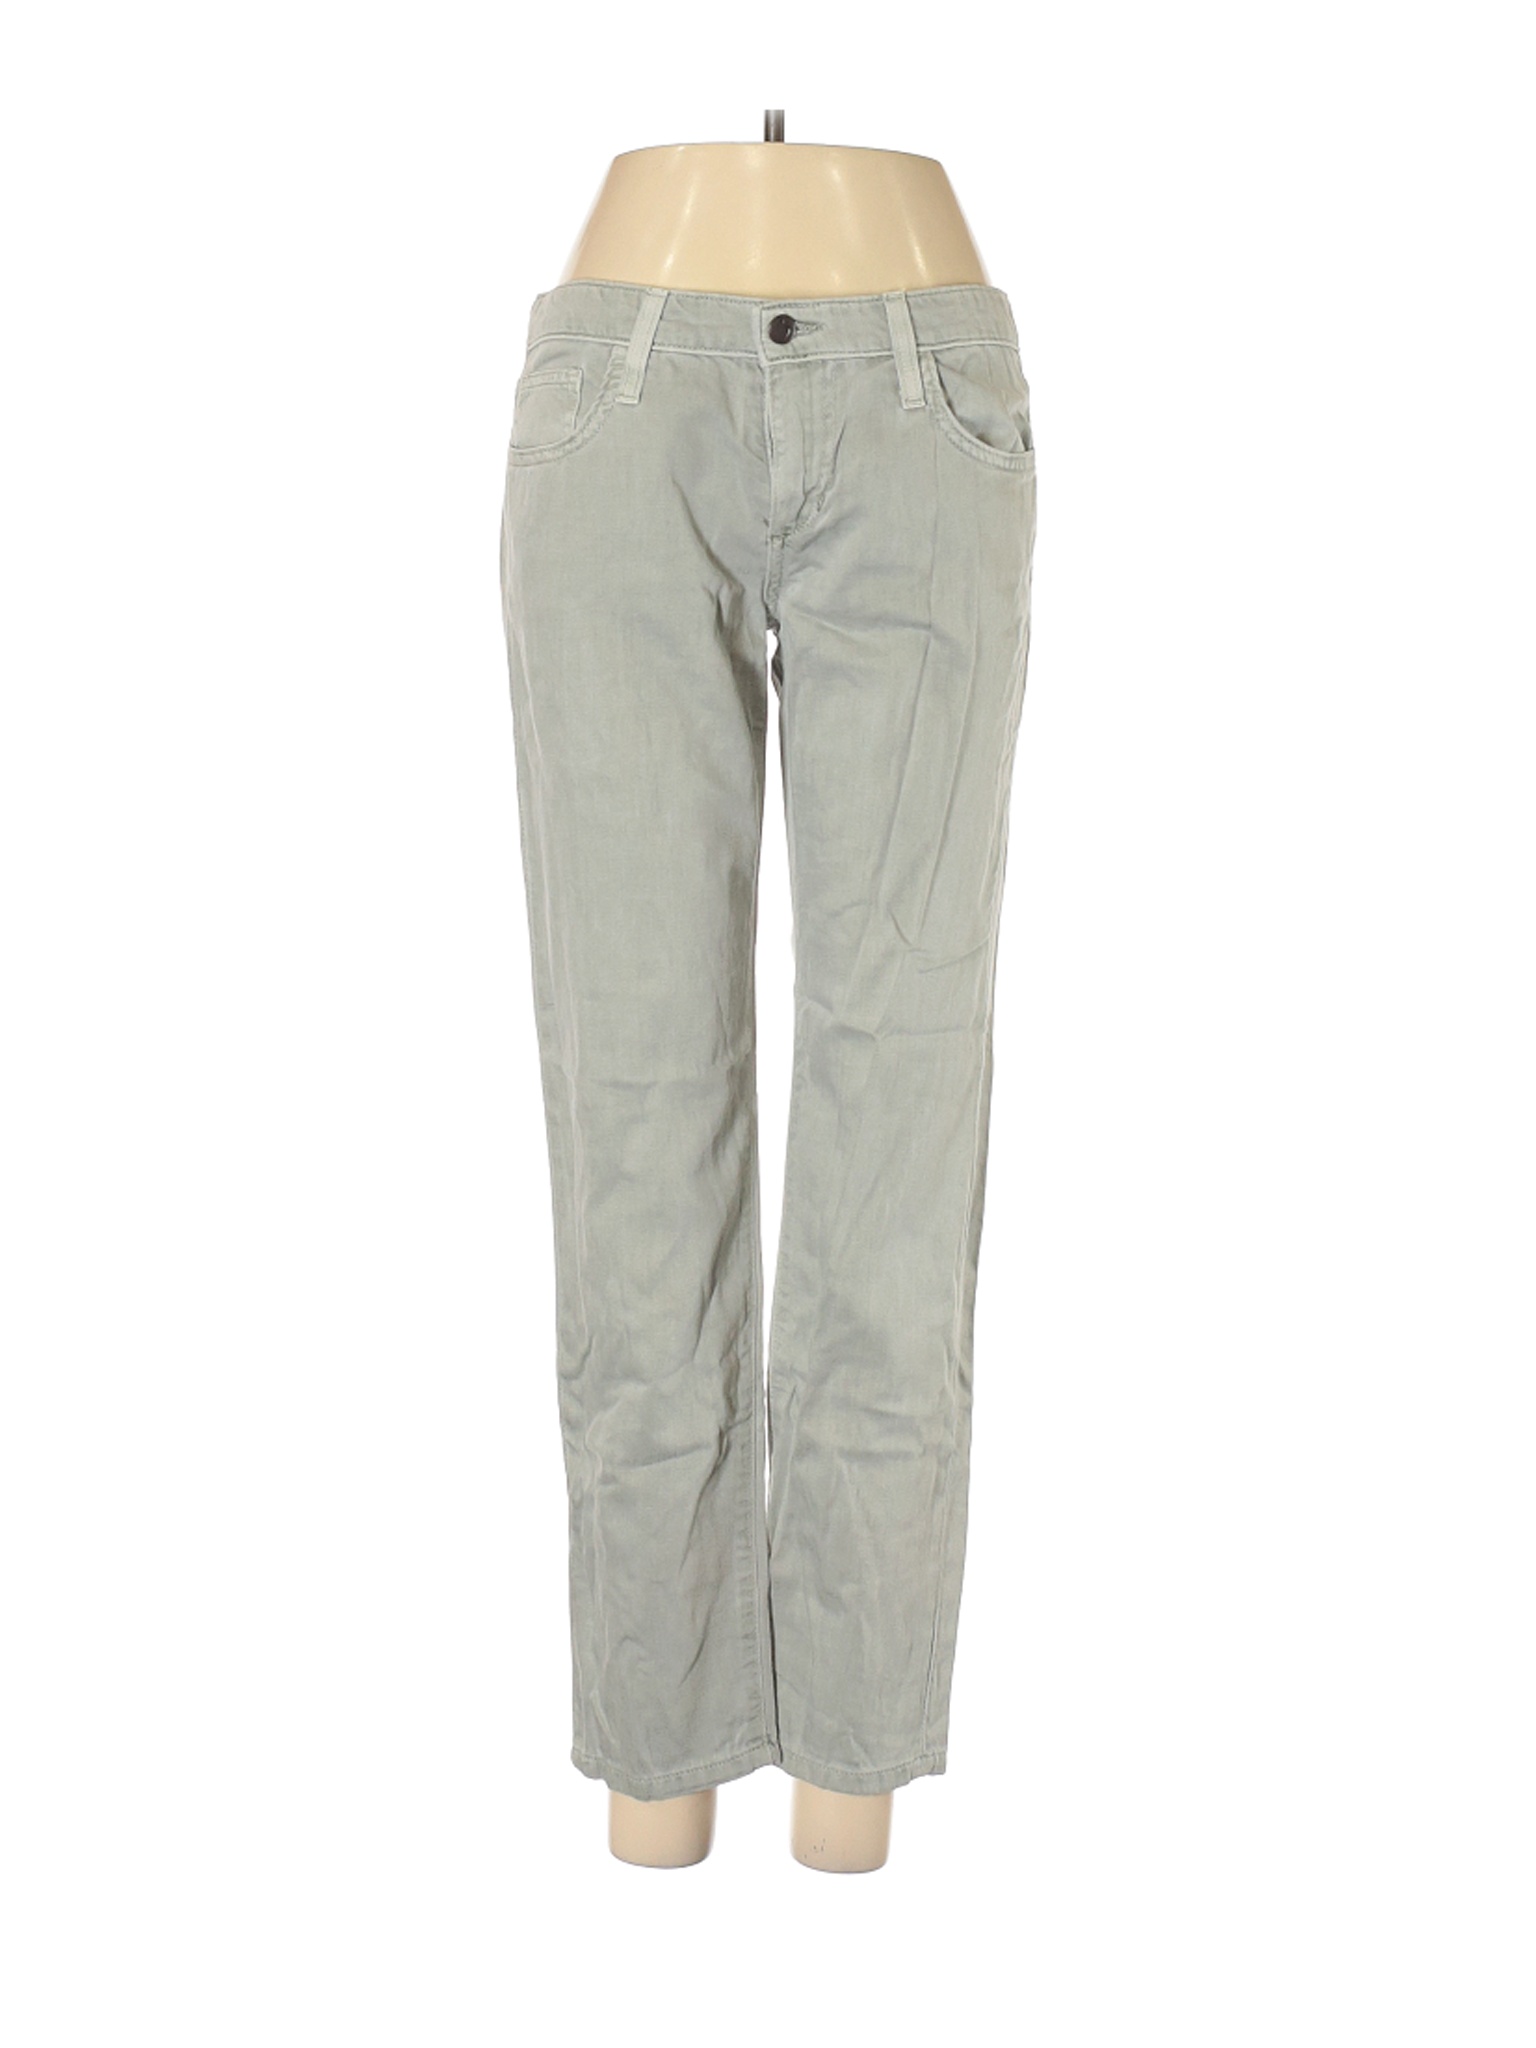 Joe's Jeans Women Gray Jeans 24W | eBay